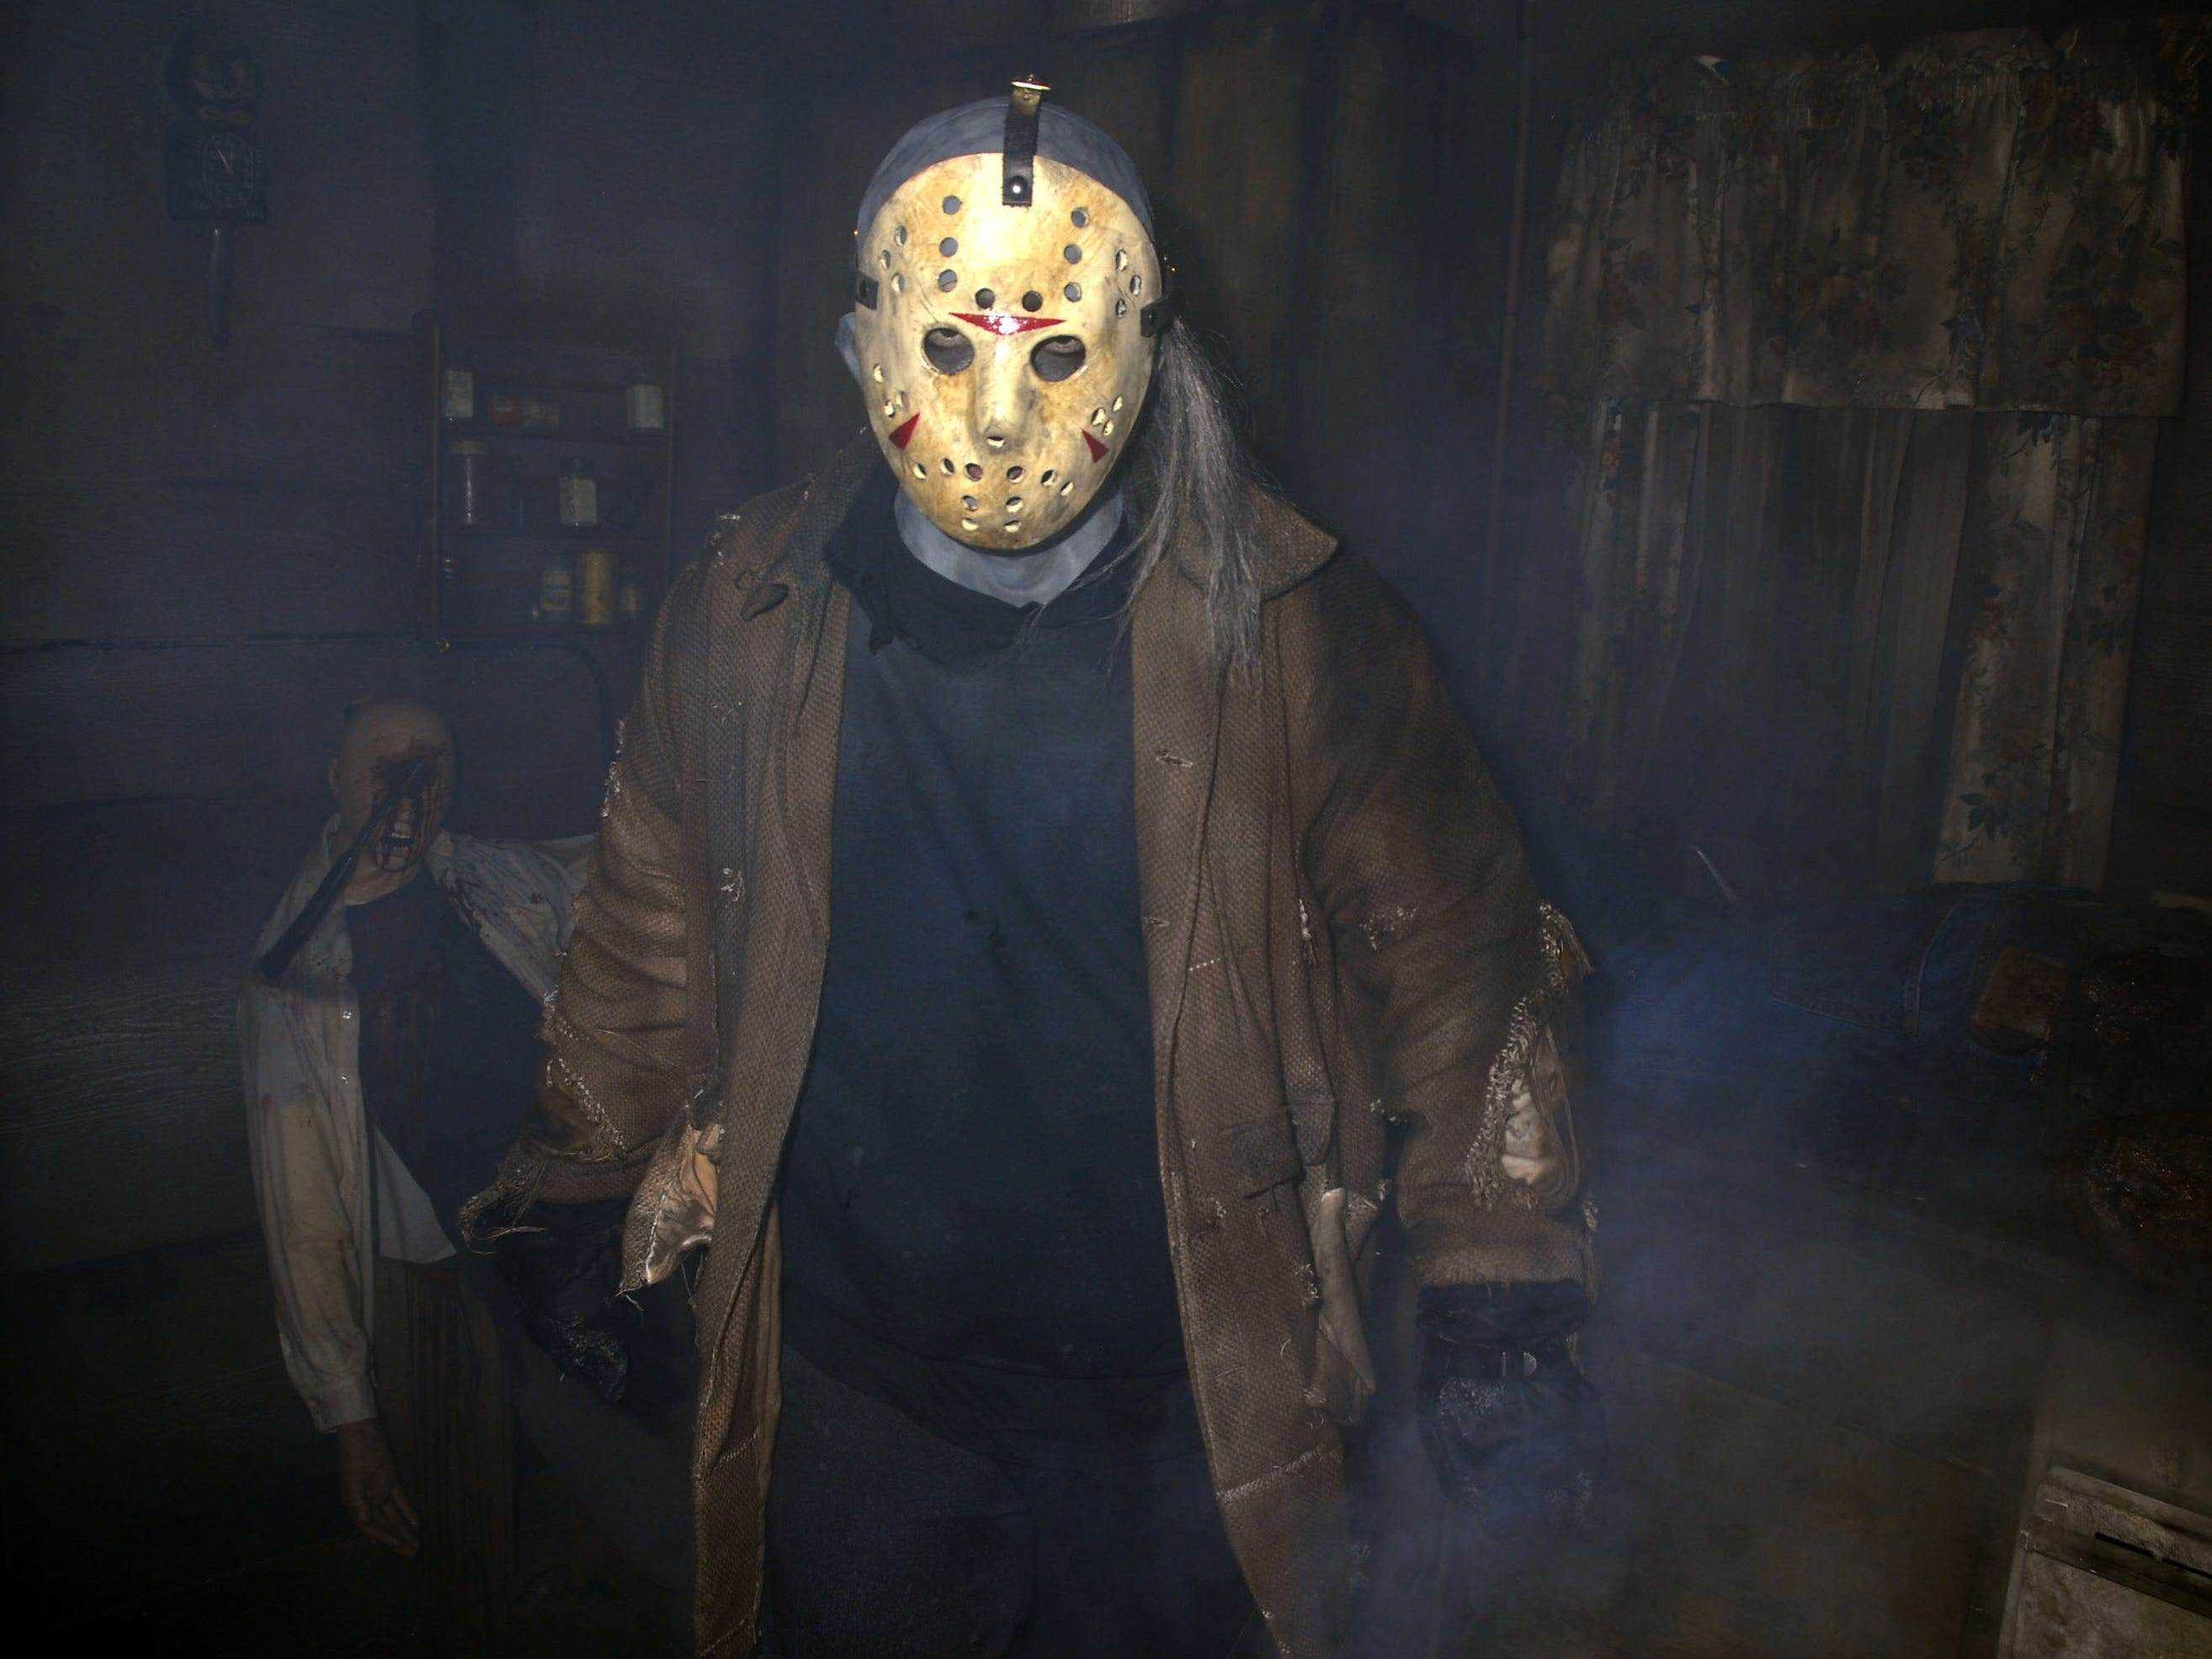 Scareactor verkleidet als Jason Voorhees von Freitag der 13. während der Halloween Horror Nights.